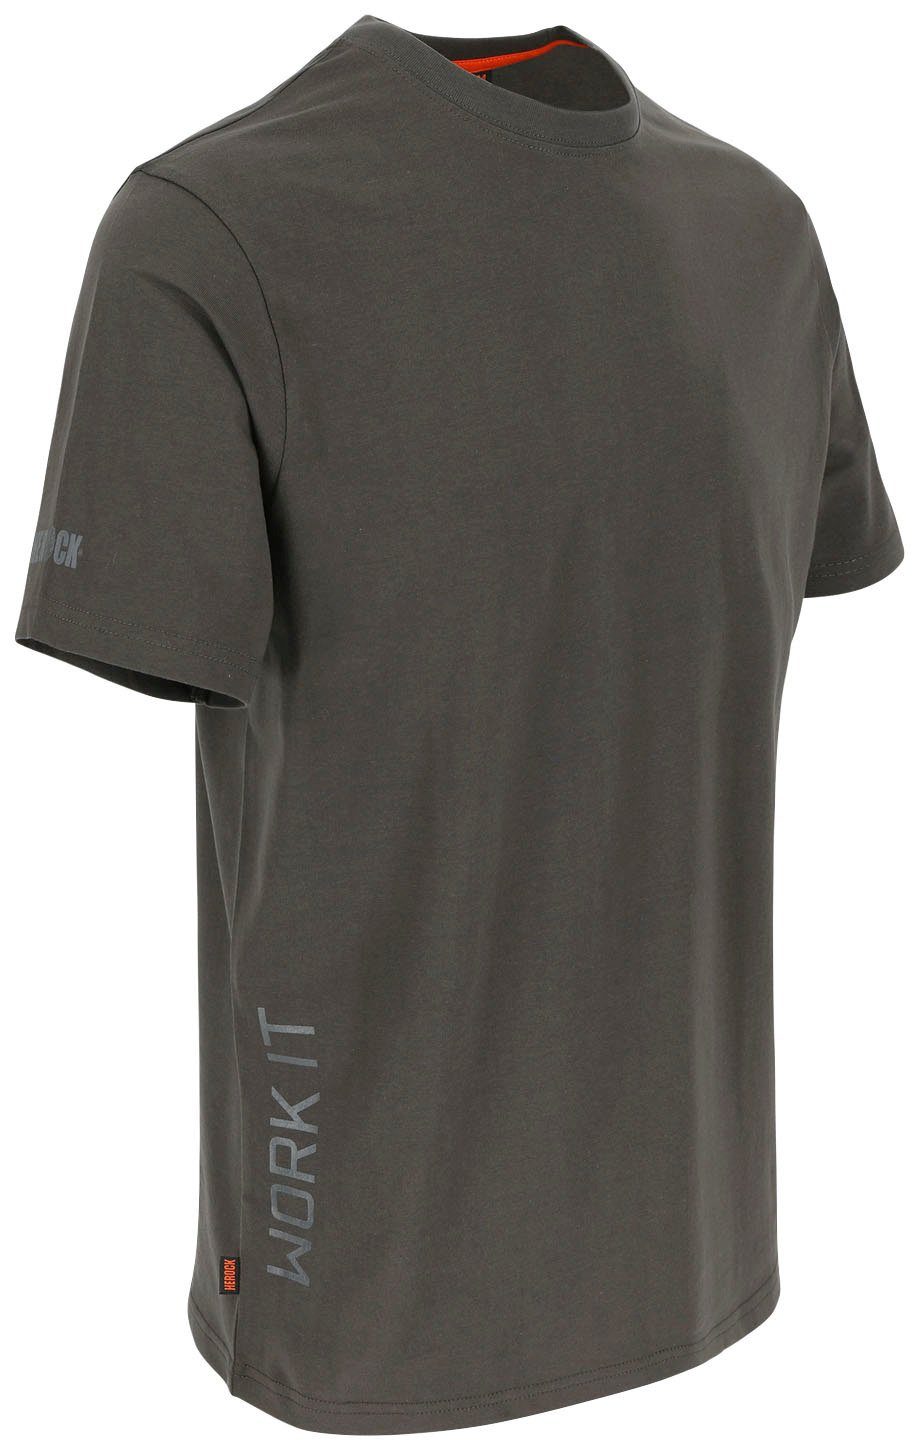 Herock T-Shirt Callius T-Shirt Ärmel, grau Rippstrickkragen kurze Ärmel Rundhalsausschnitt, kurze Herock®-Aufdruck